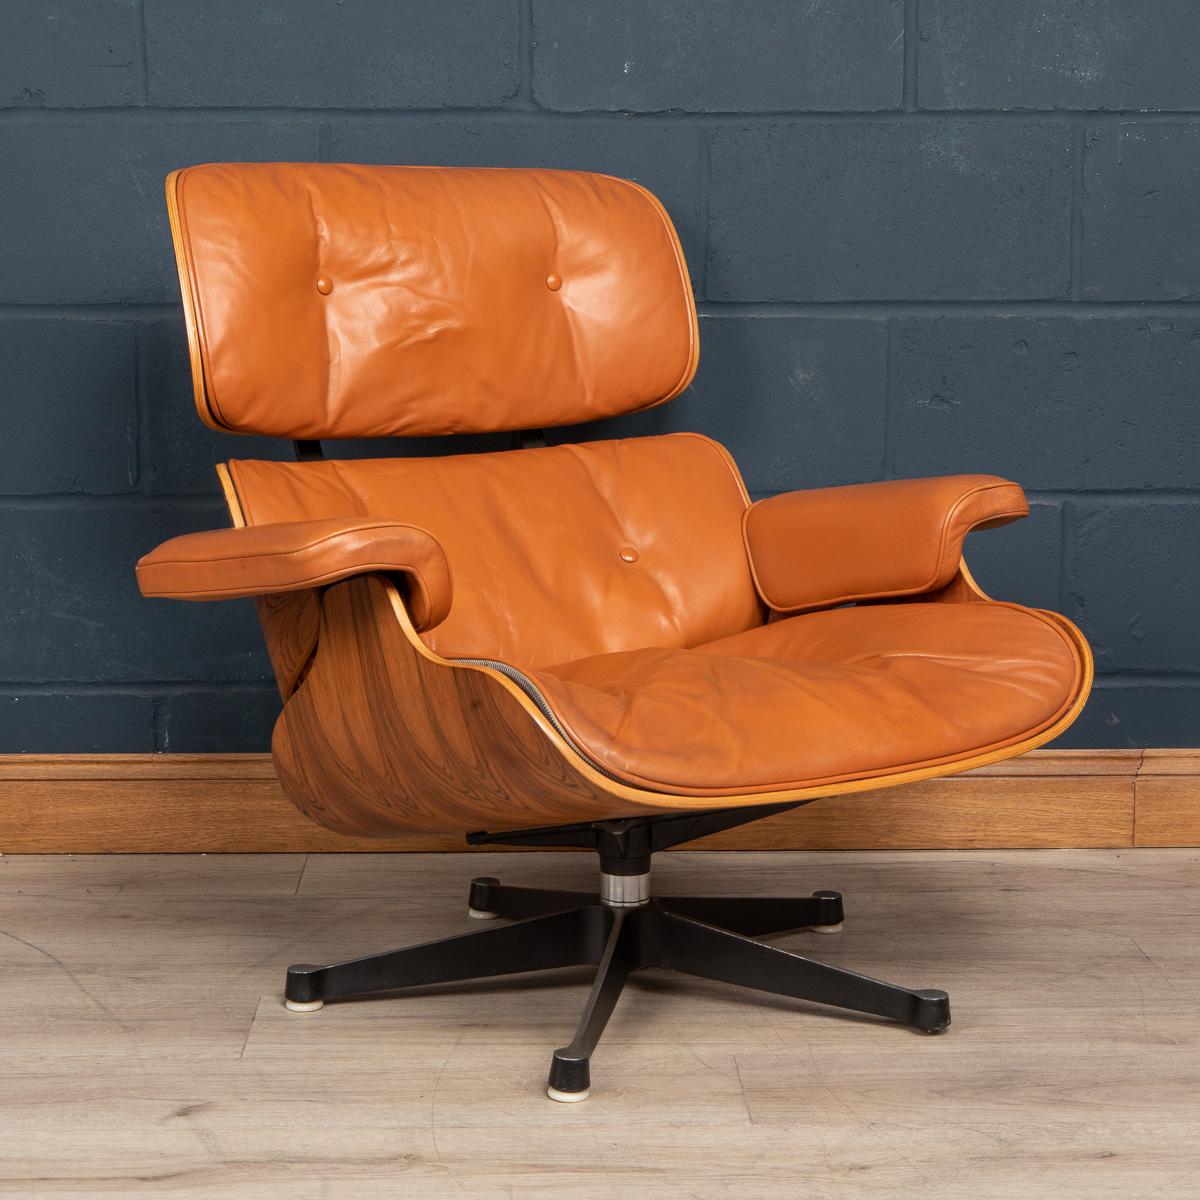 Le fauteuil de salon et l'ottoman Eames sont des meubles en contreplaqué moulé et en cuir, conçus par Charles et Ray Eames pour la société de meubles Herman Miller. Ils sont officiellement intitulés Eames Lounge et Ottoman et ont été commercialisés